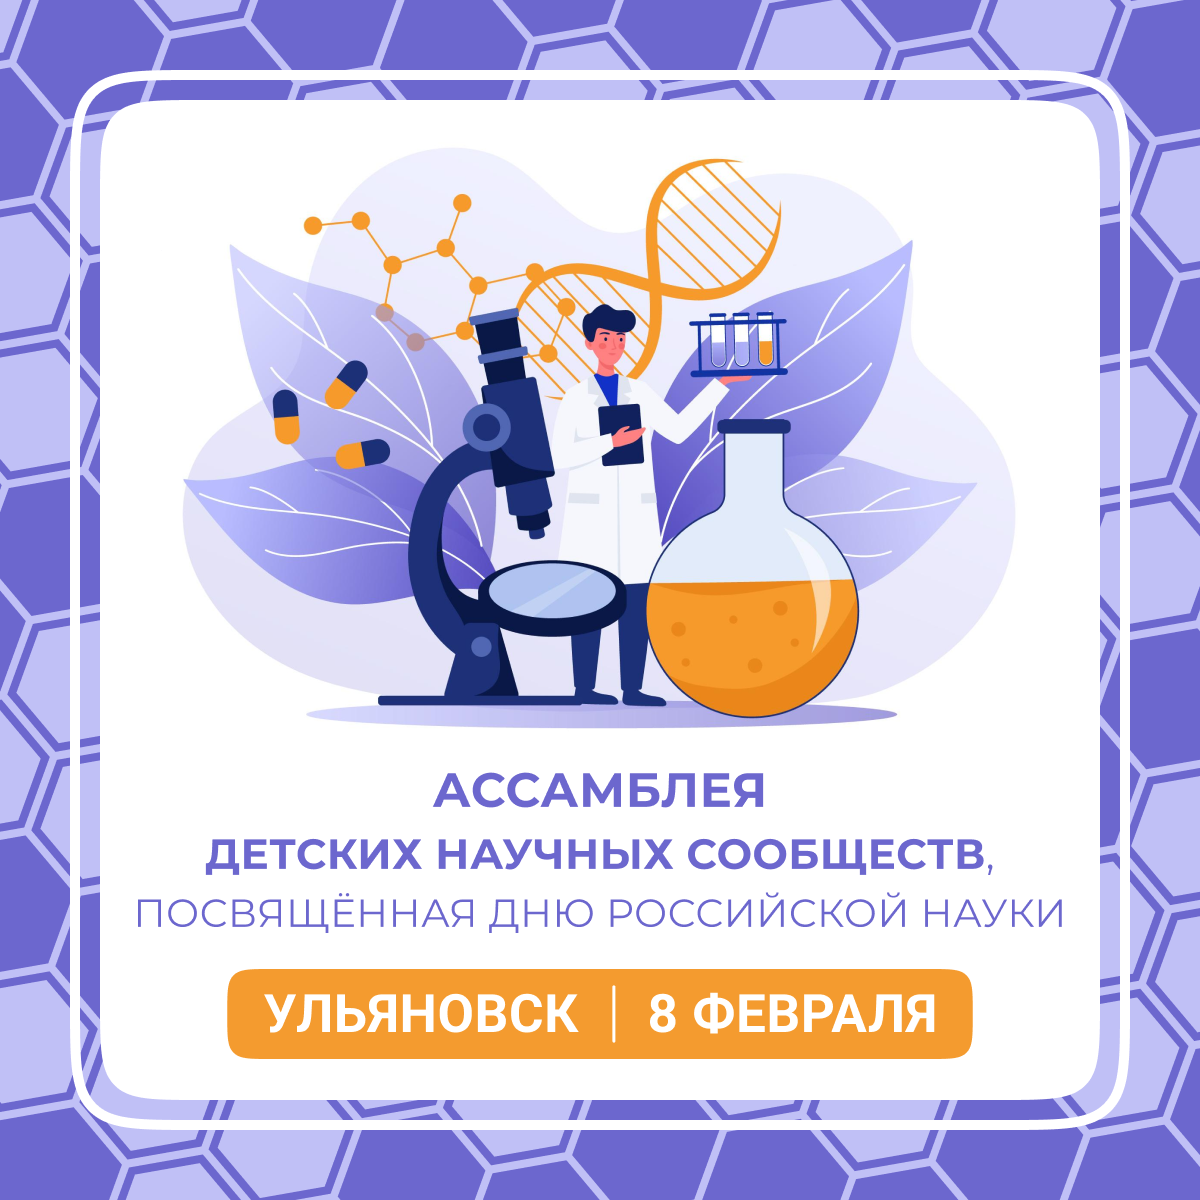 8 февраля в Ульяновске состоится Ассамблея детских научных сообществ, посвящённая Дню российской науки..